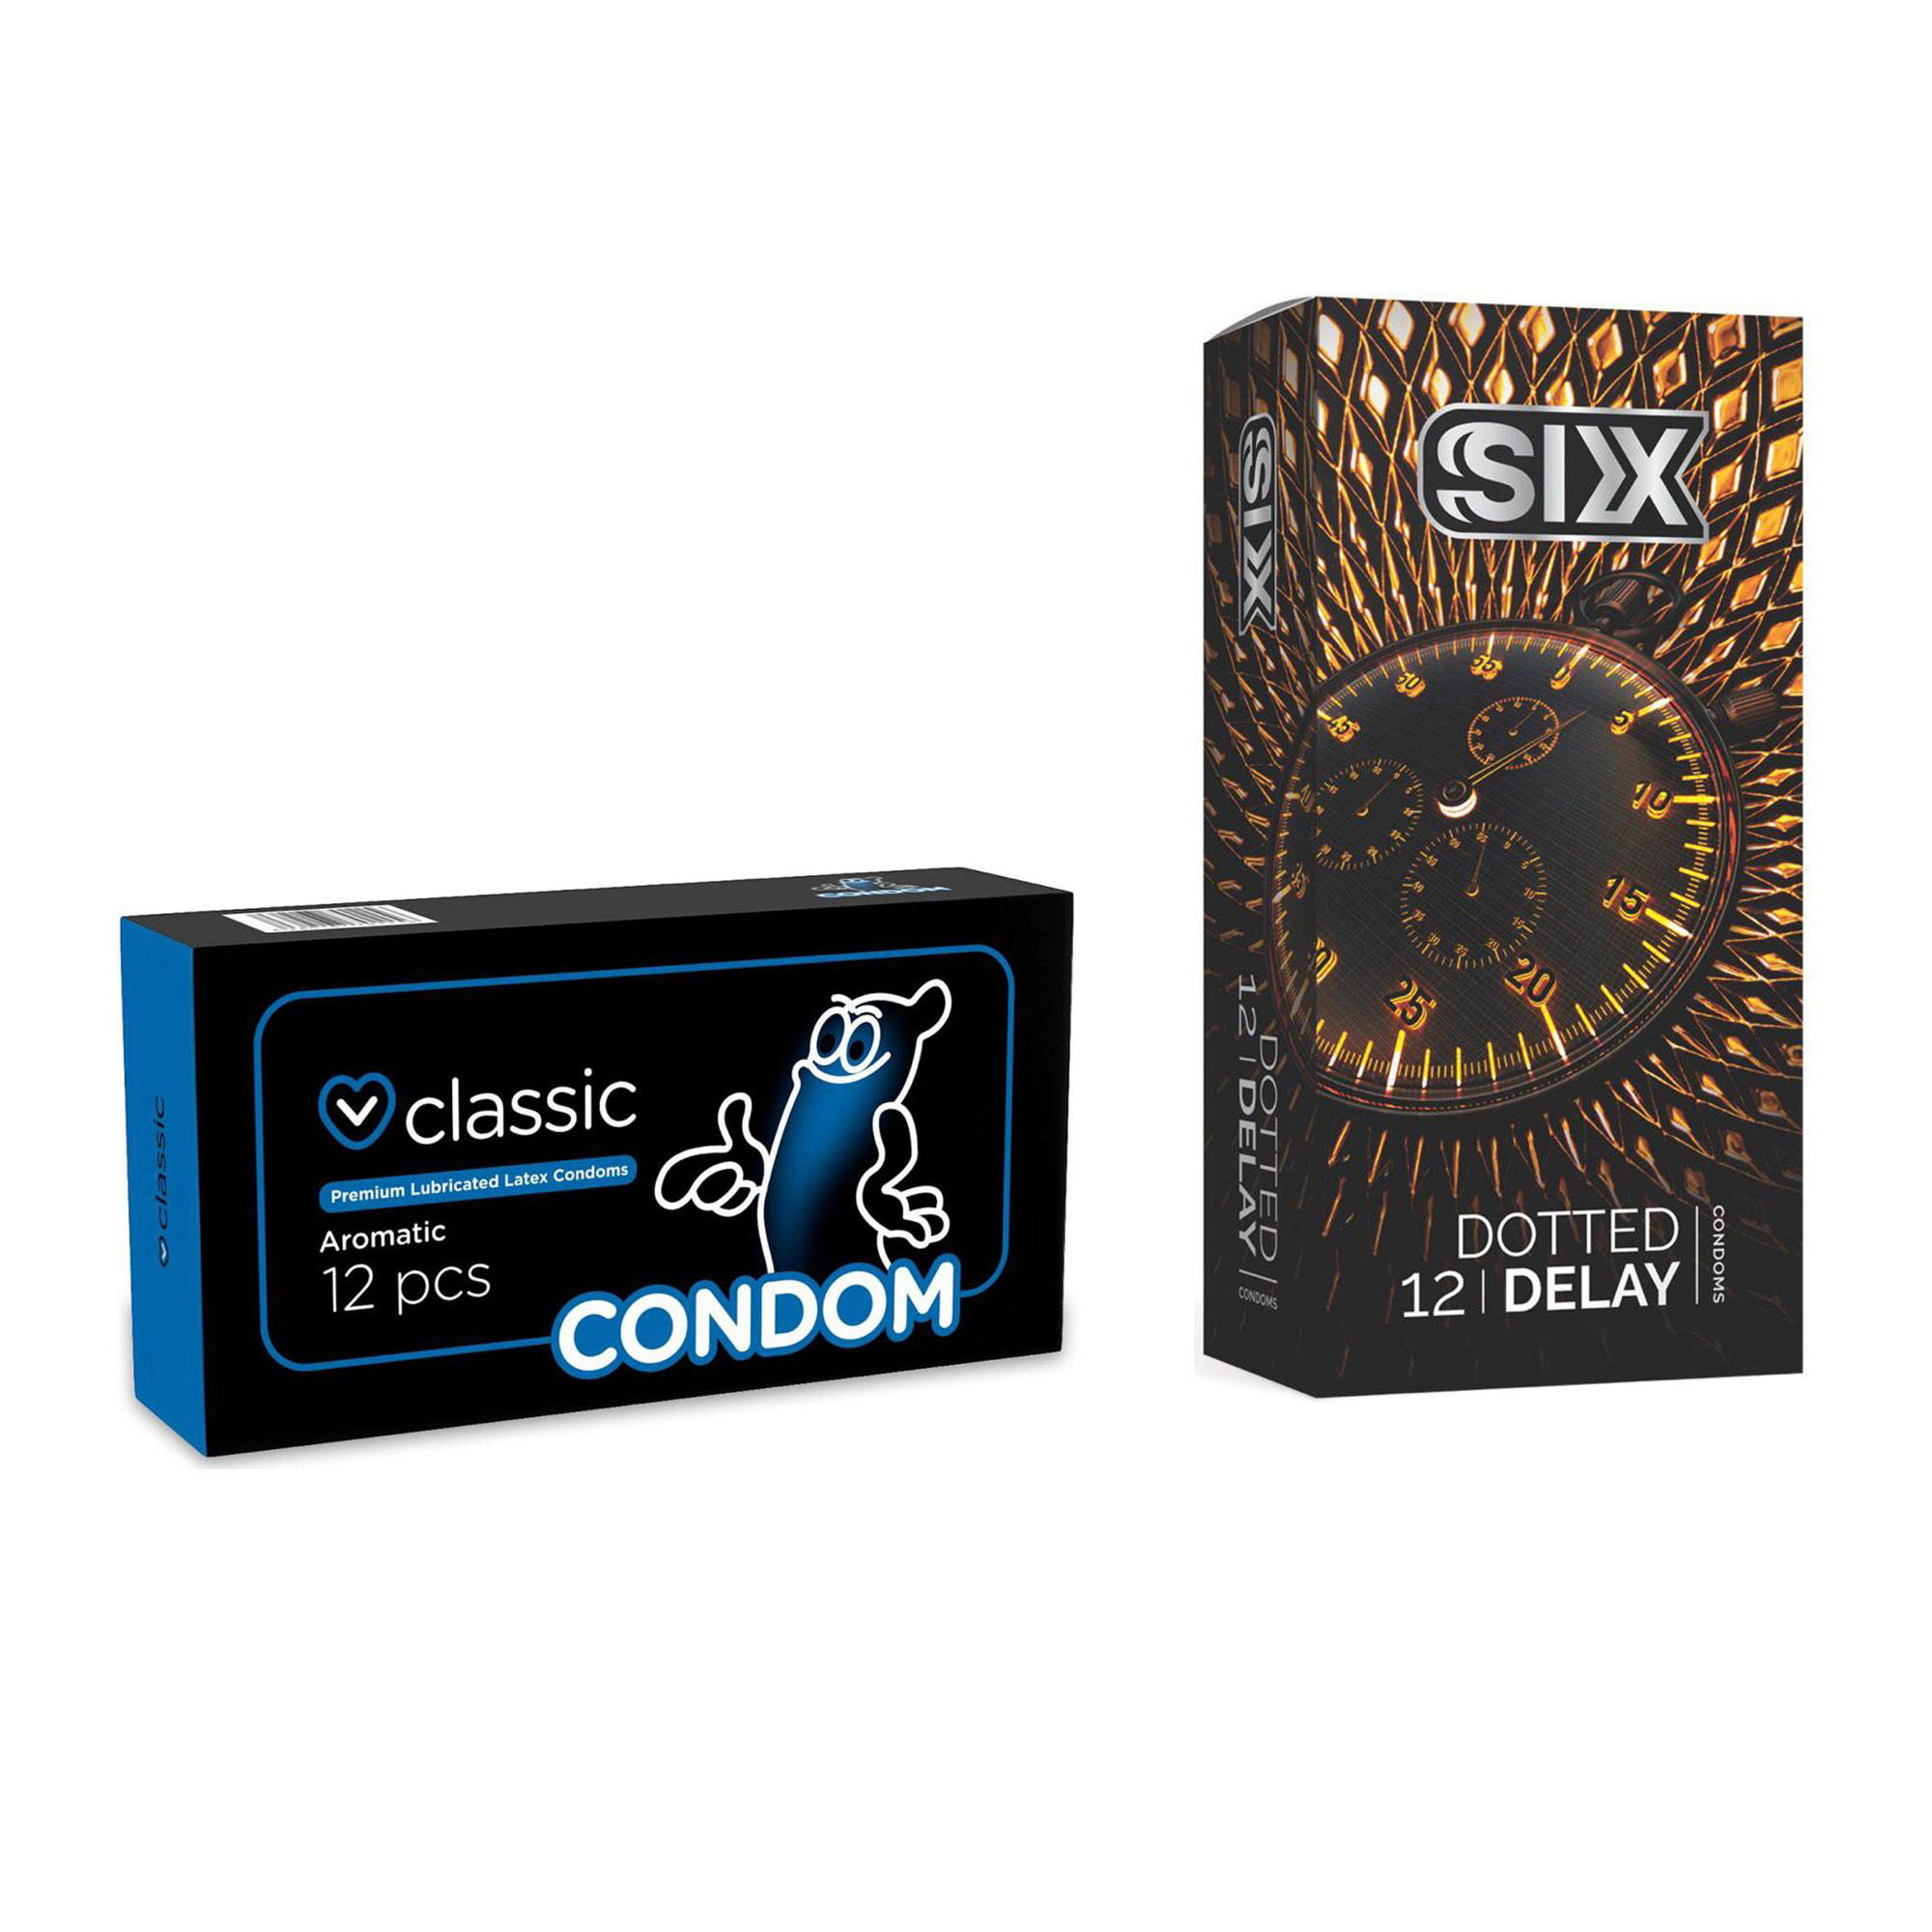 کاندوم سیکس مدل Dotted Delay بسته 12 عددی به همراه کاندوم کاندوم مدل Classic بسته 12 عددی